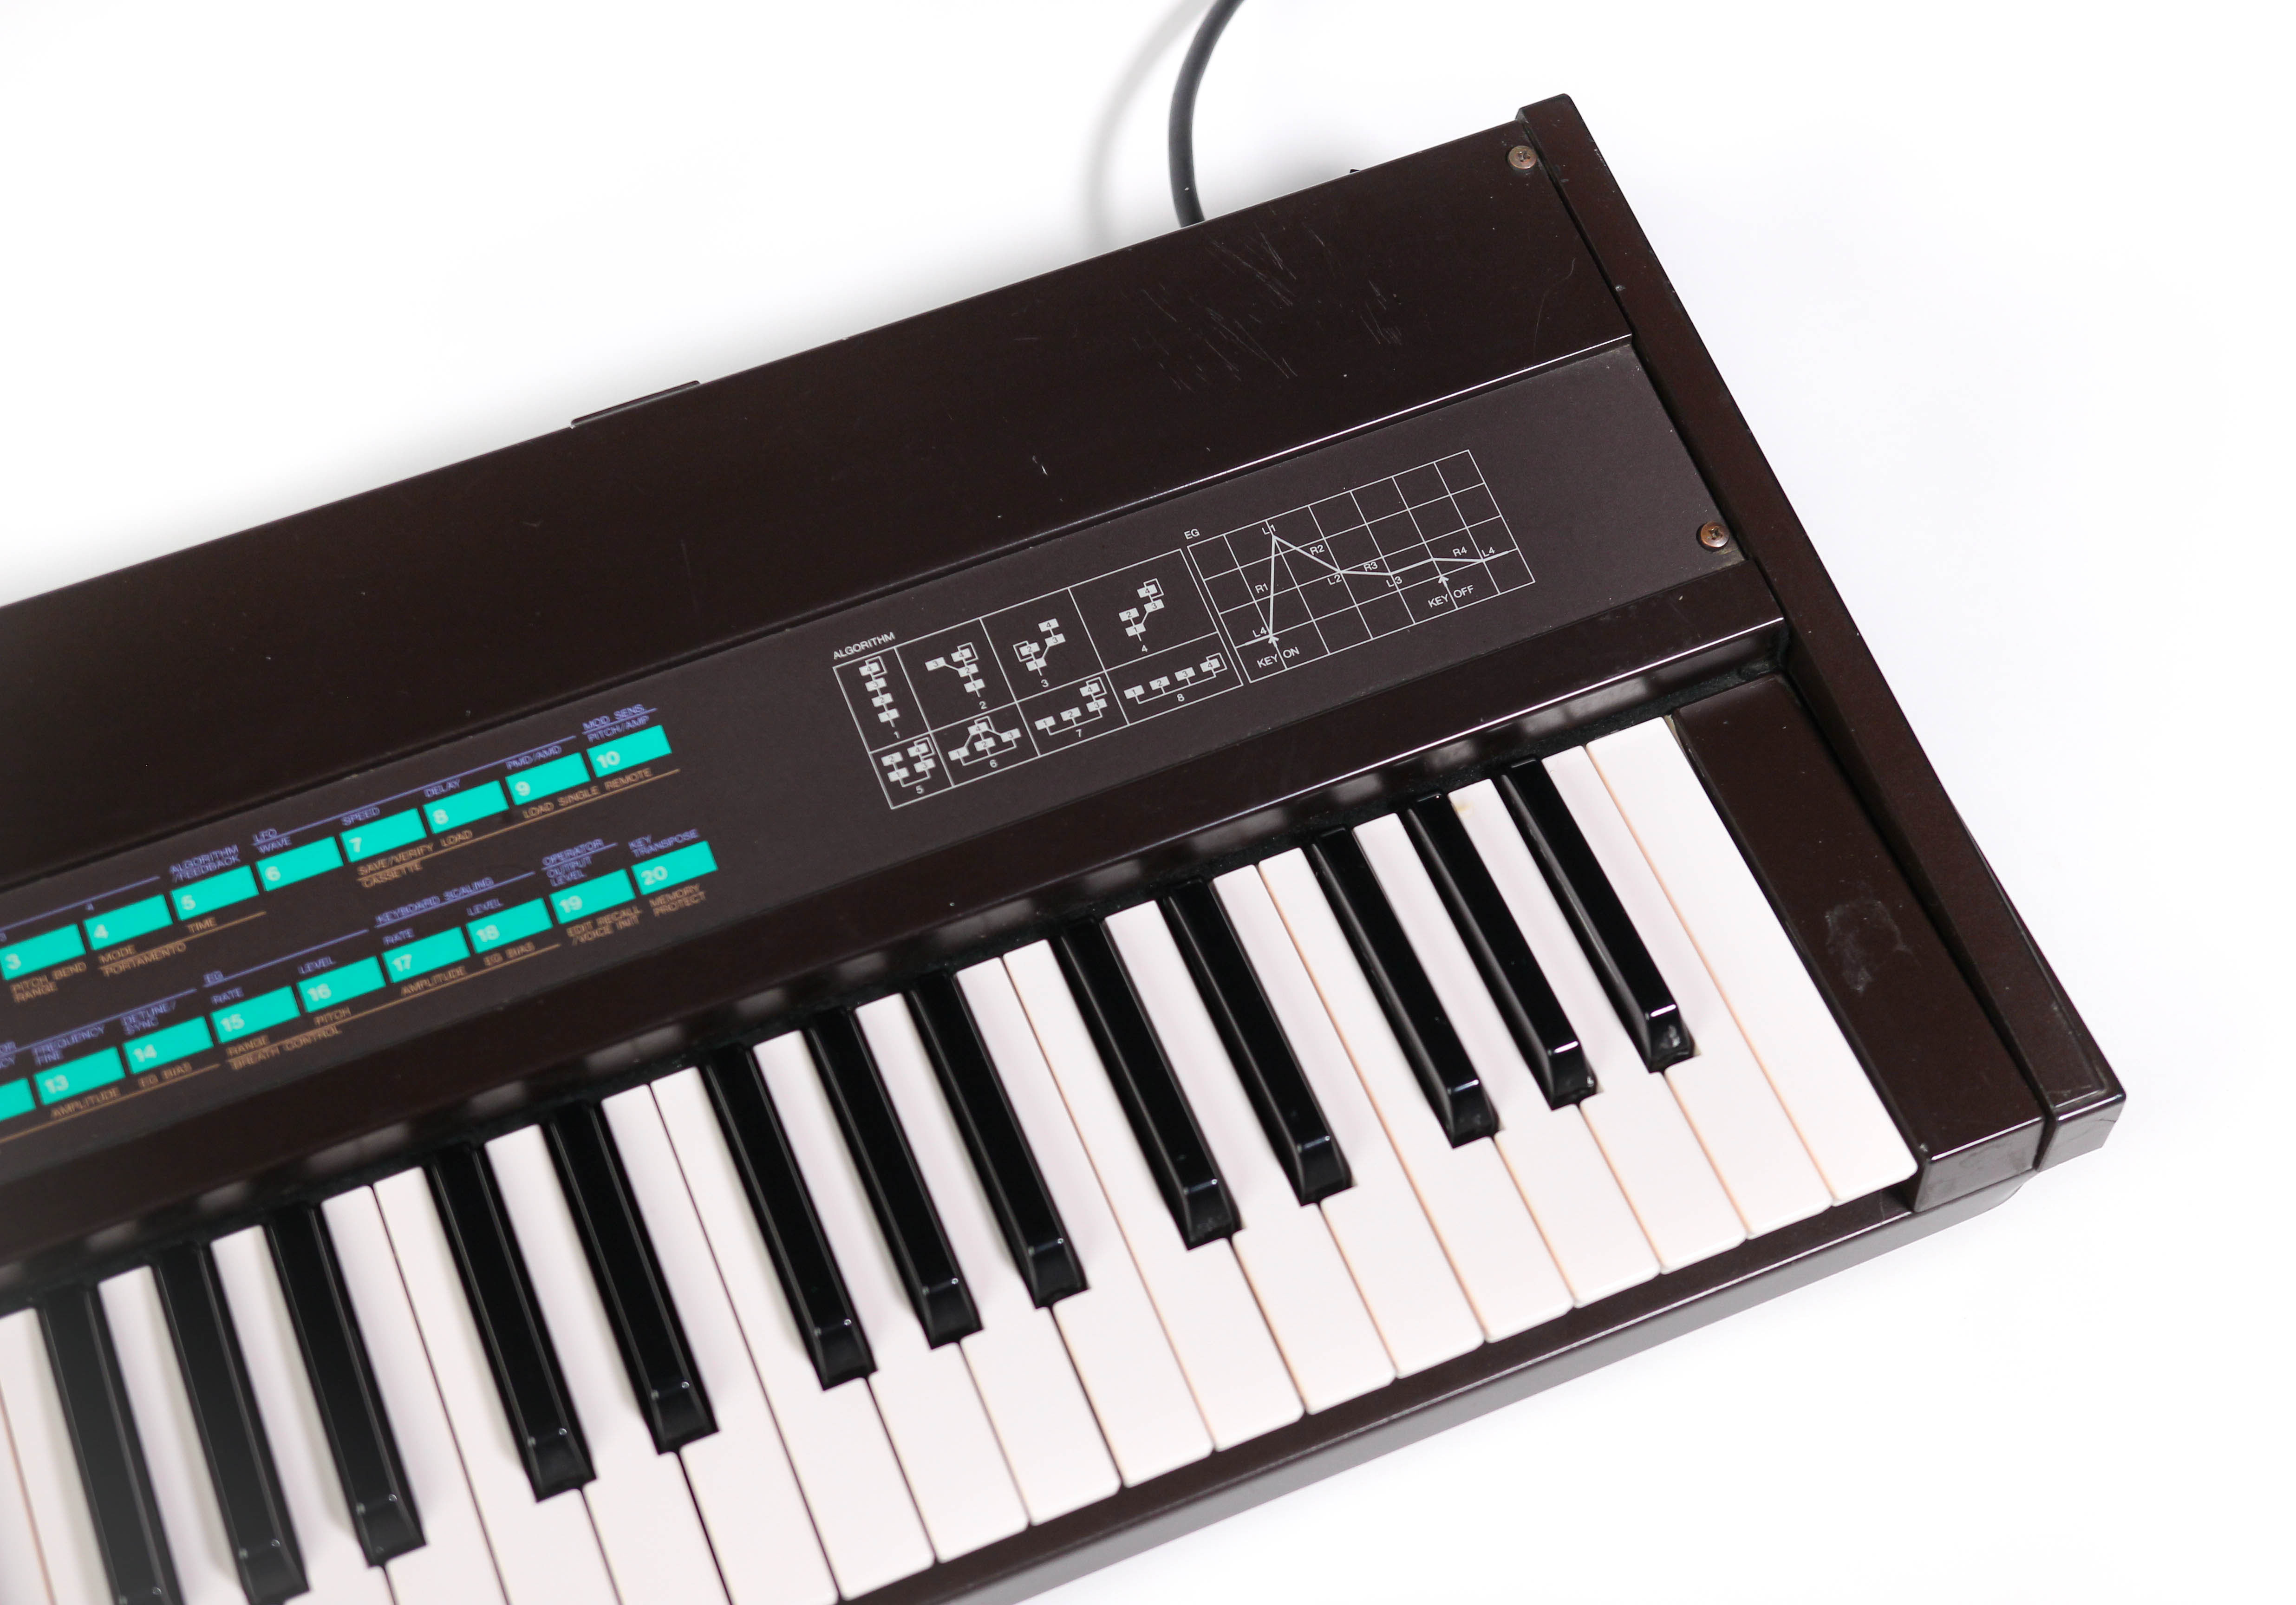 Yamaha DX9 synthesizer